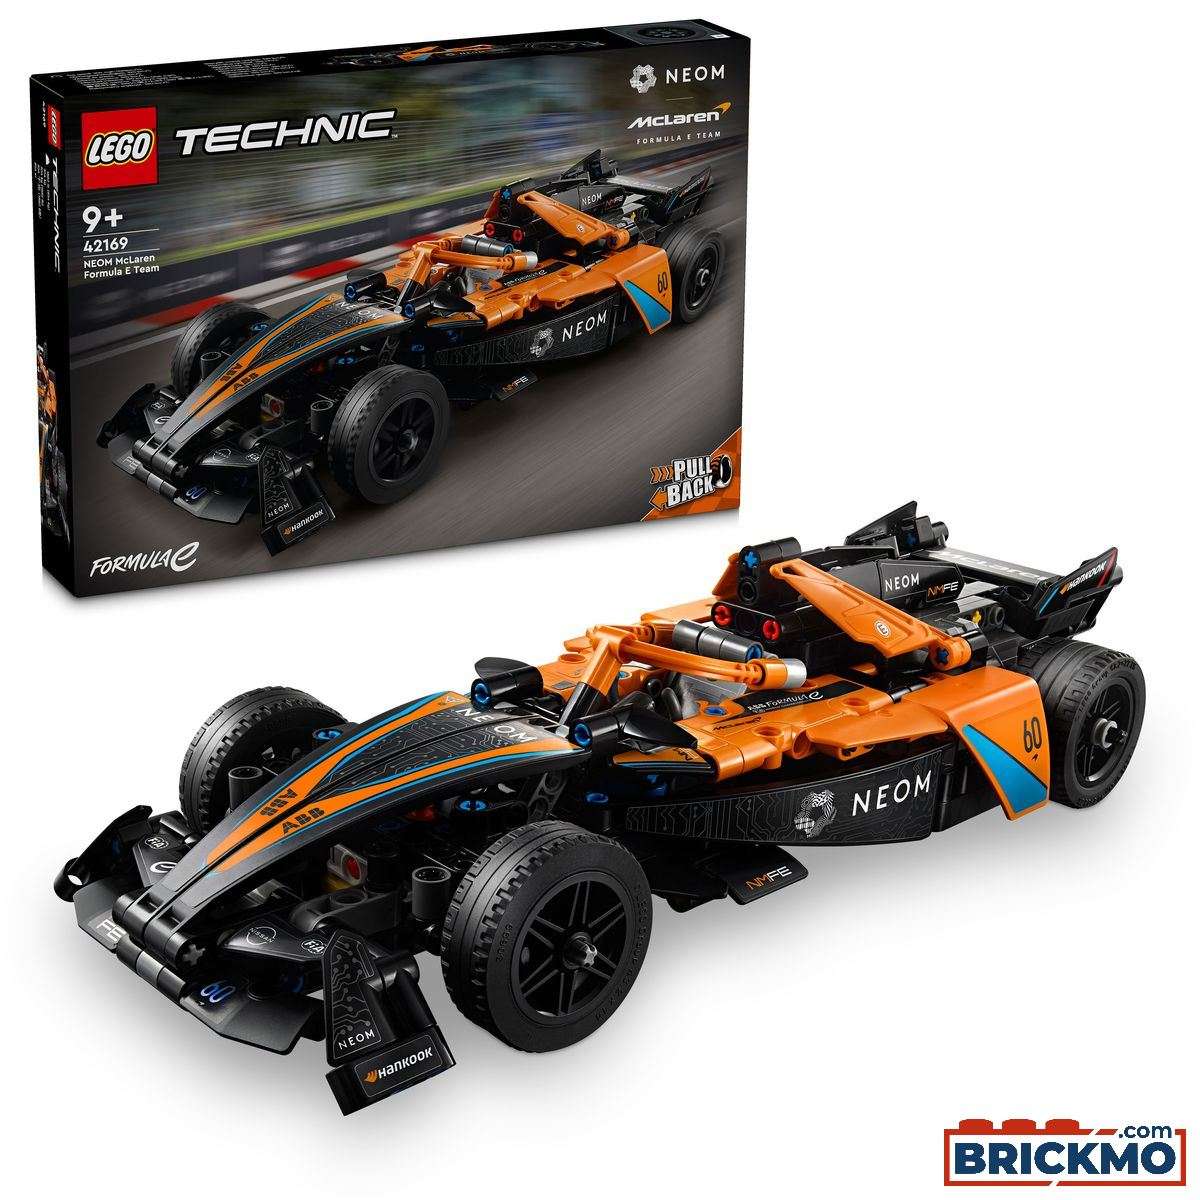 LEGO Technic 42169 NEOM McLaren Formula E racewagen 42169